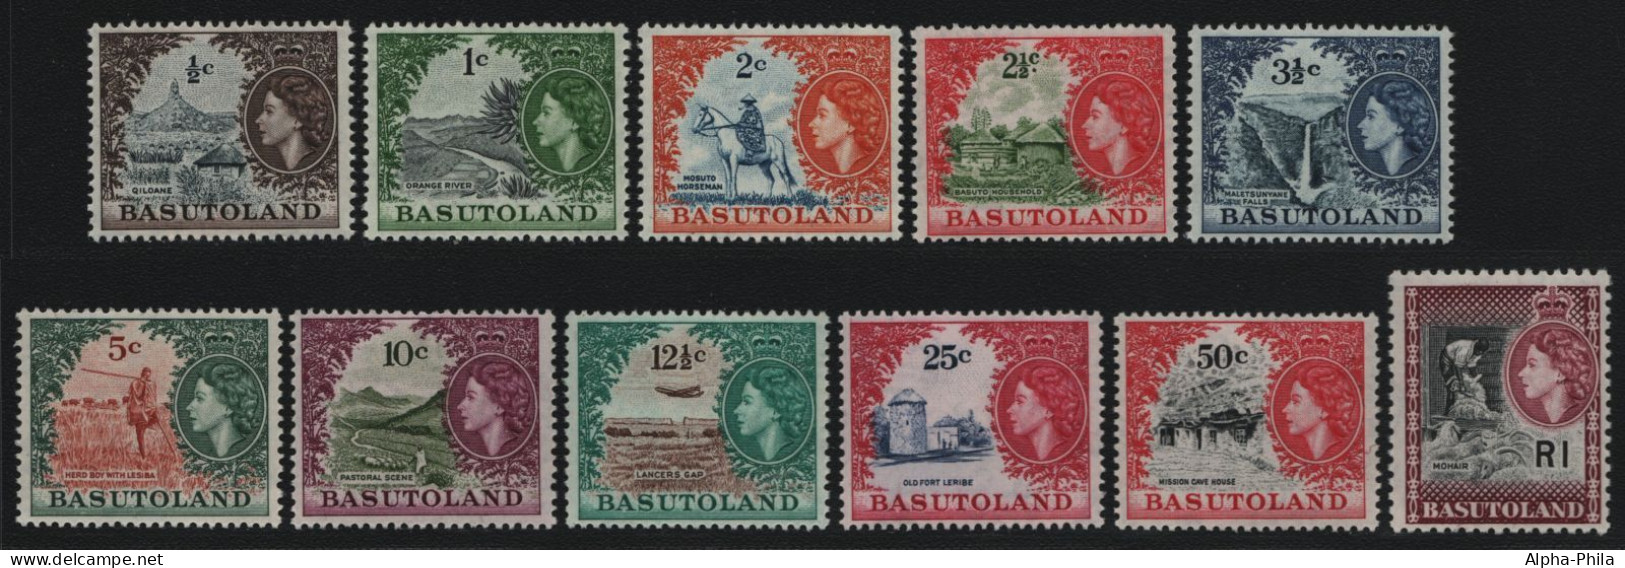 Basutoland 1961 - Mi-Nr. 72-82 ** - MNH - Queen Elizabeth II (II) - 1933-1964 Colonie Britannique